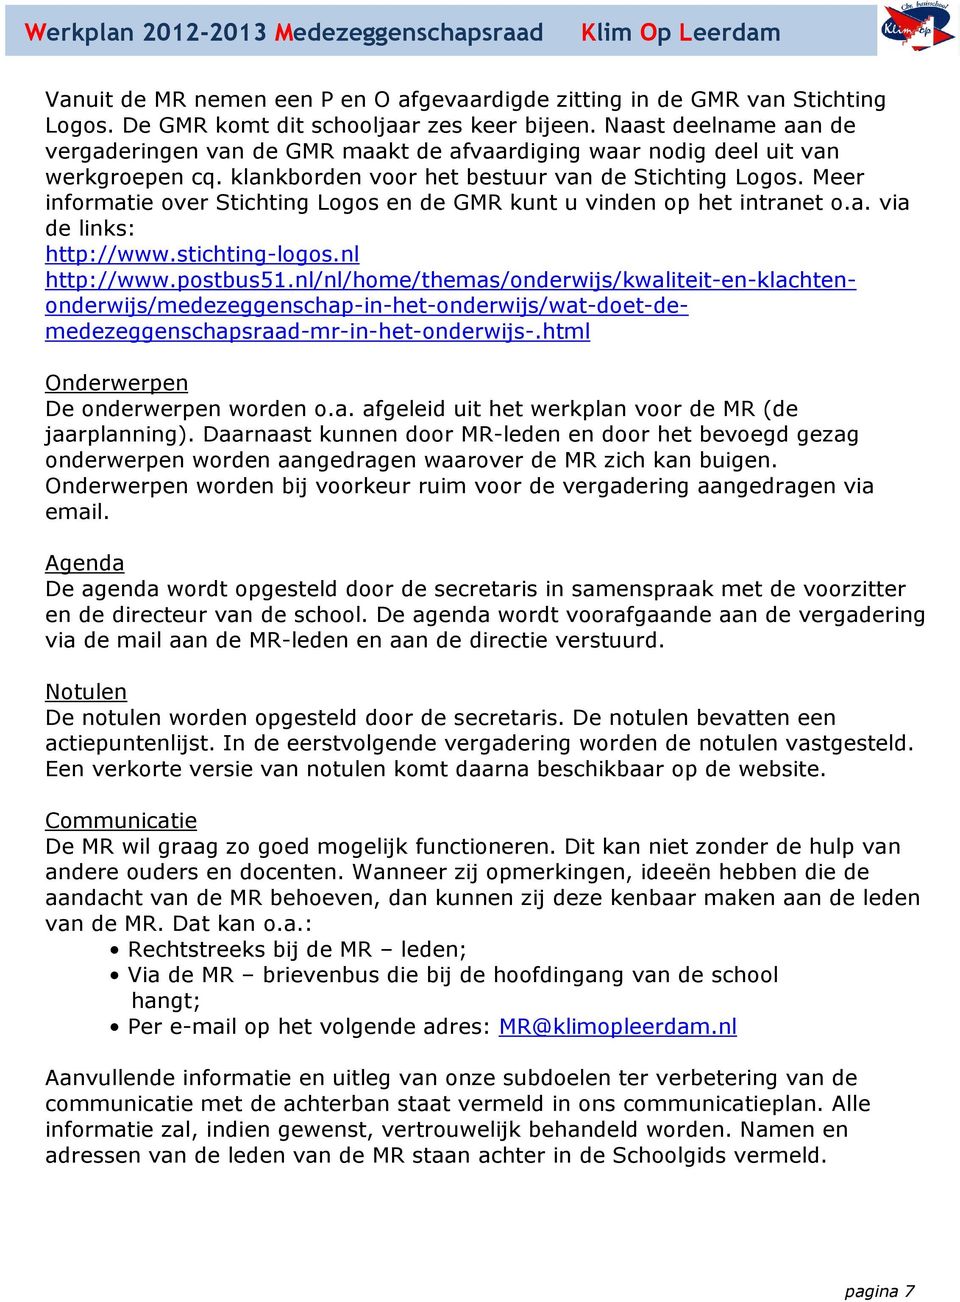 Meer informatie over Stichting Logos en de GMR kunt u vinden op het intranet o.a. via de links: http://www.stichting-logos.nl http://www.postbus51.